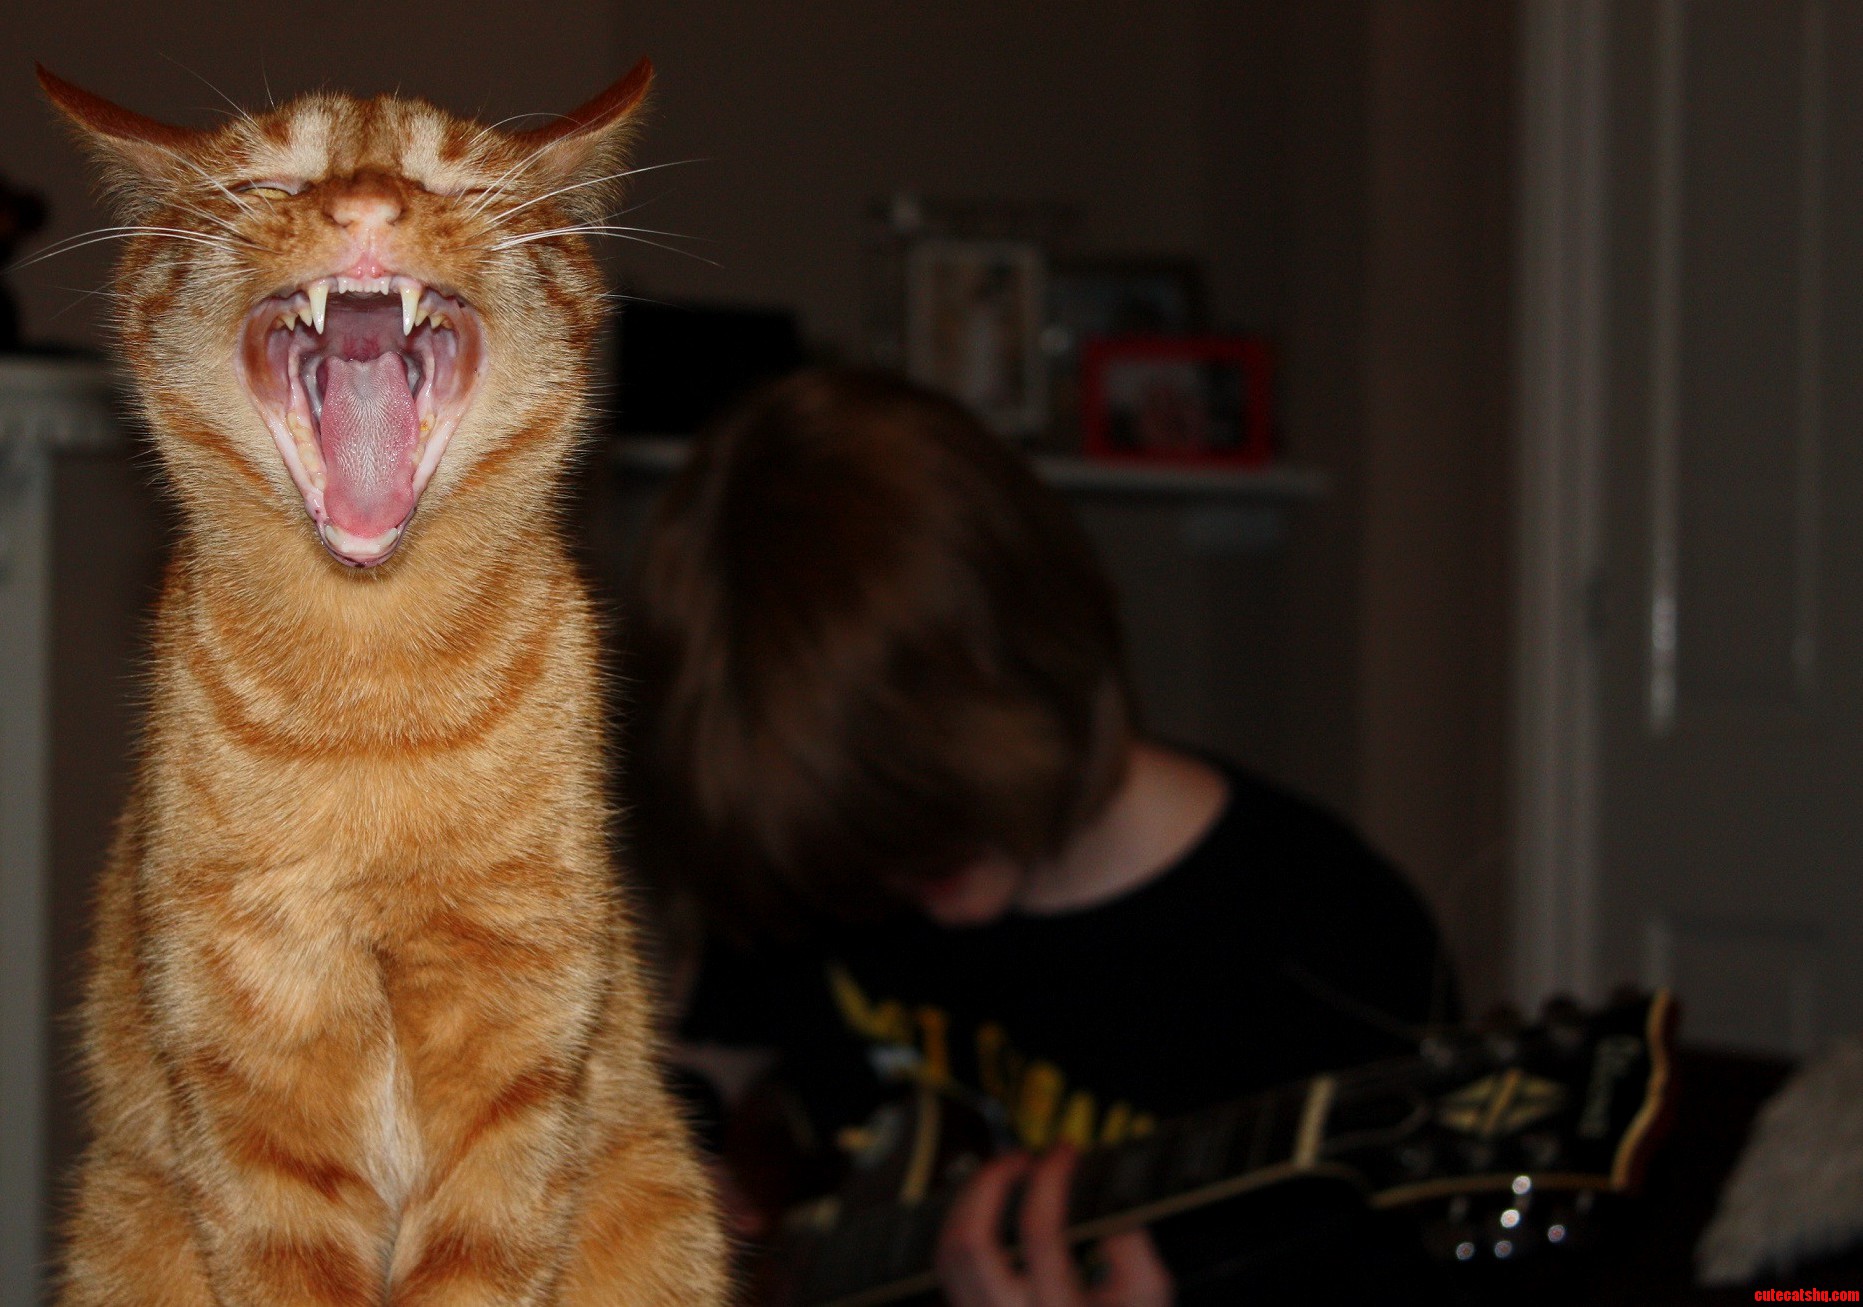 Gus Yawning